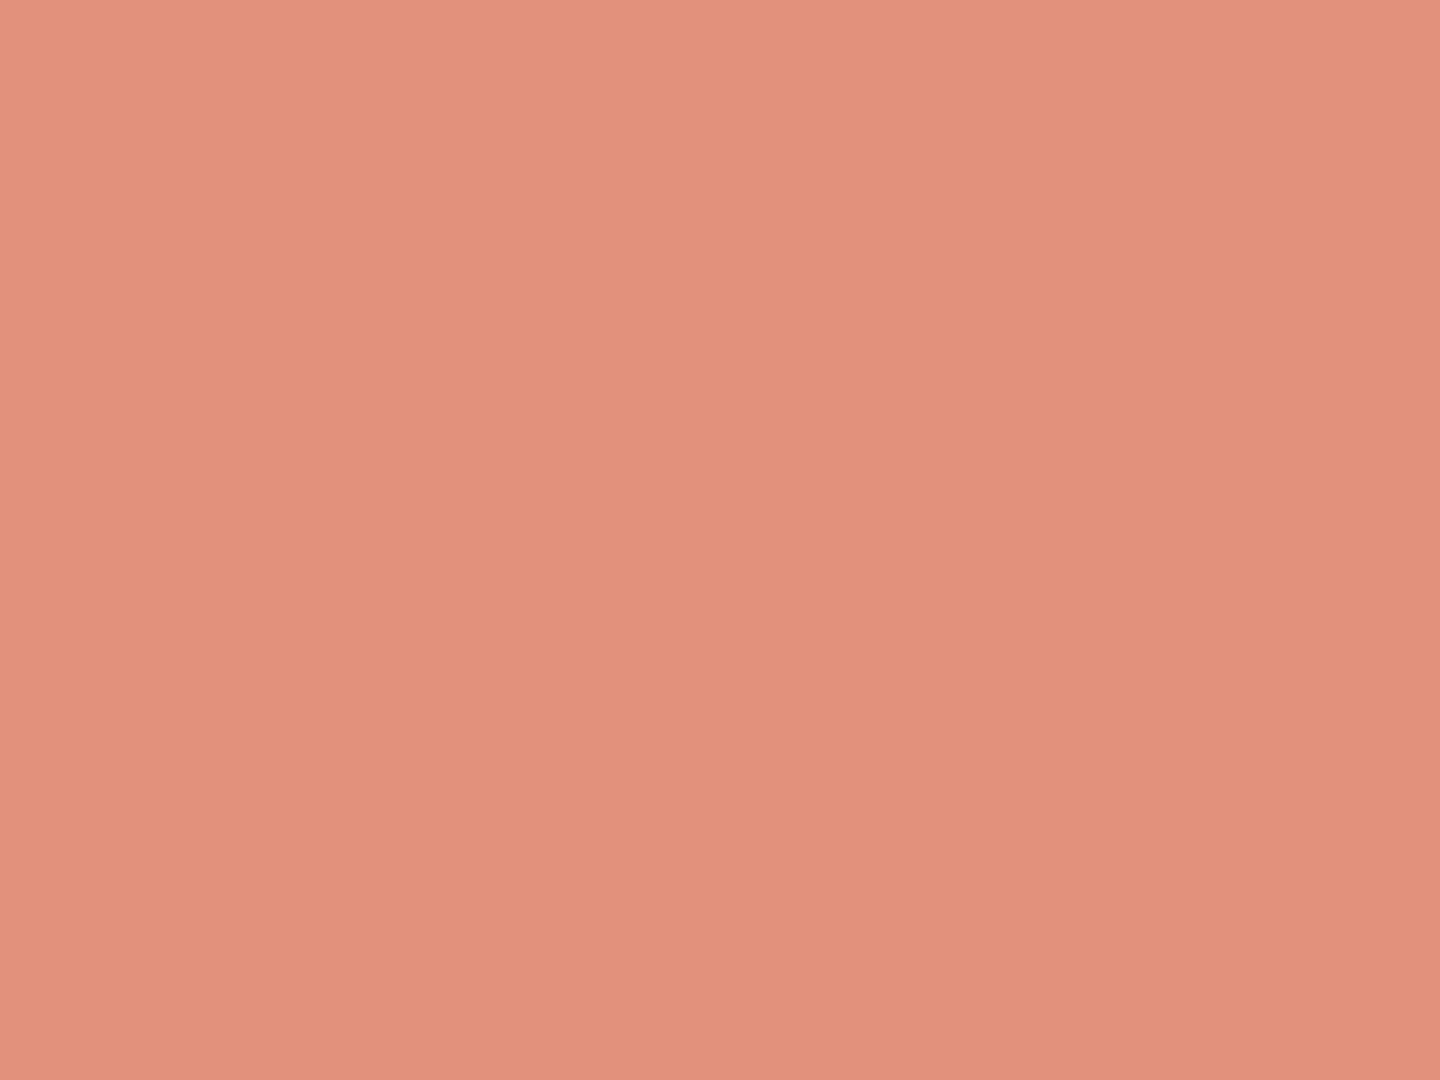 Flat Sheet Lind - Pink Terracotta